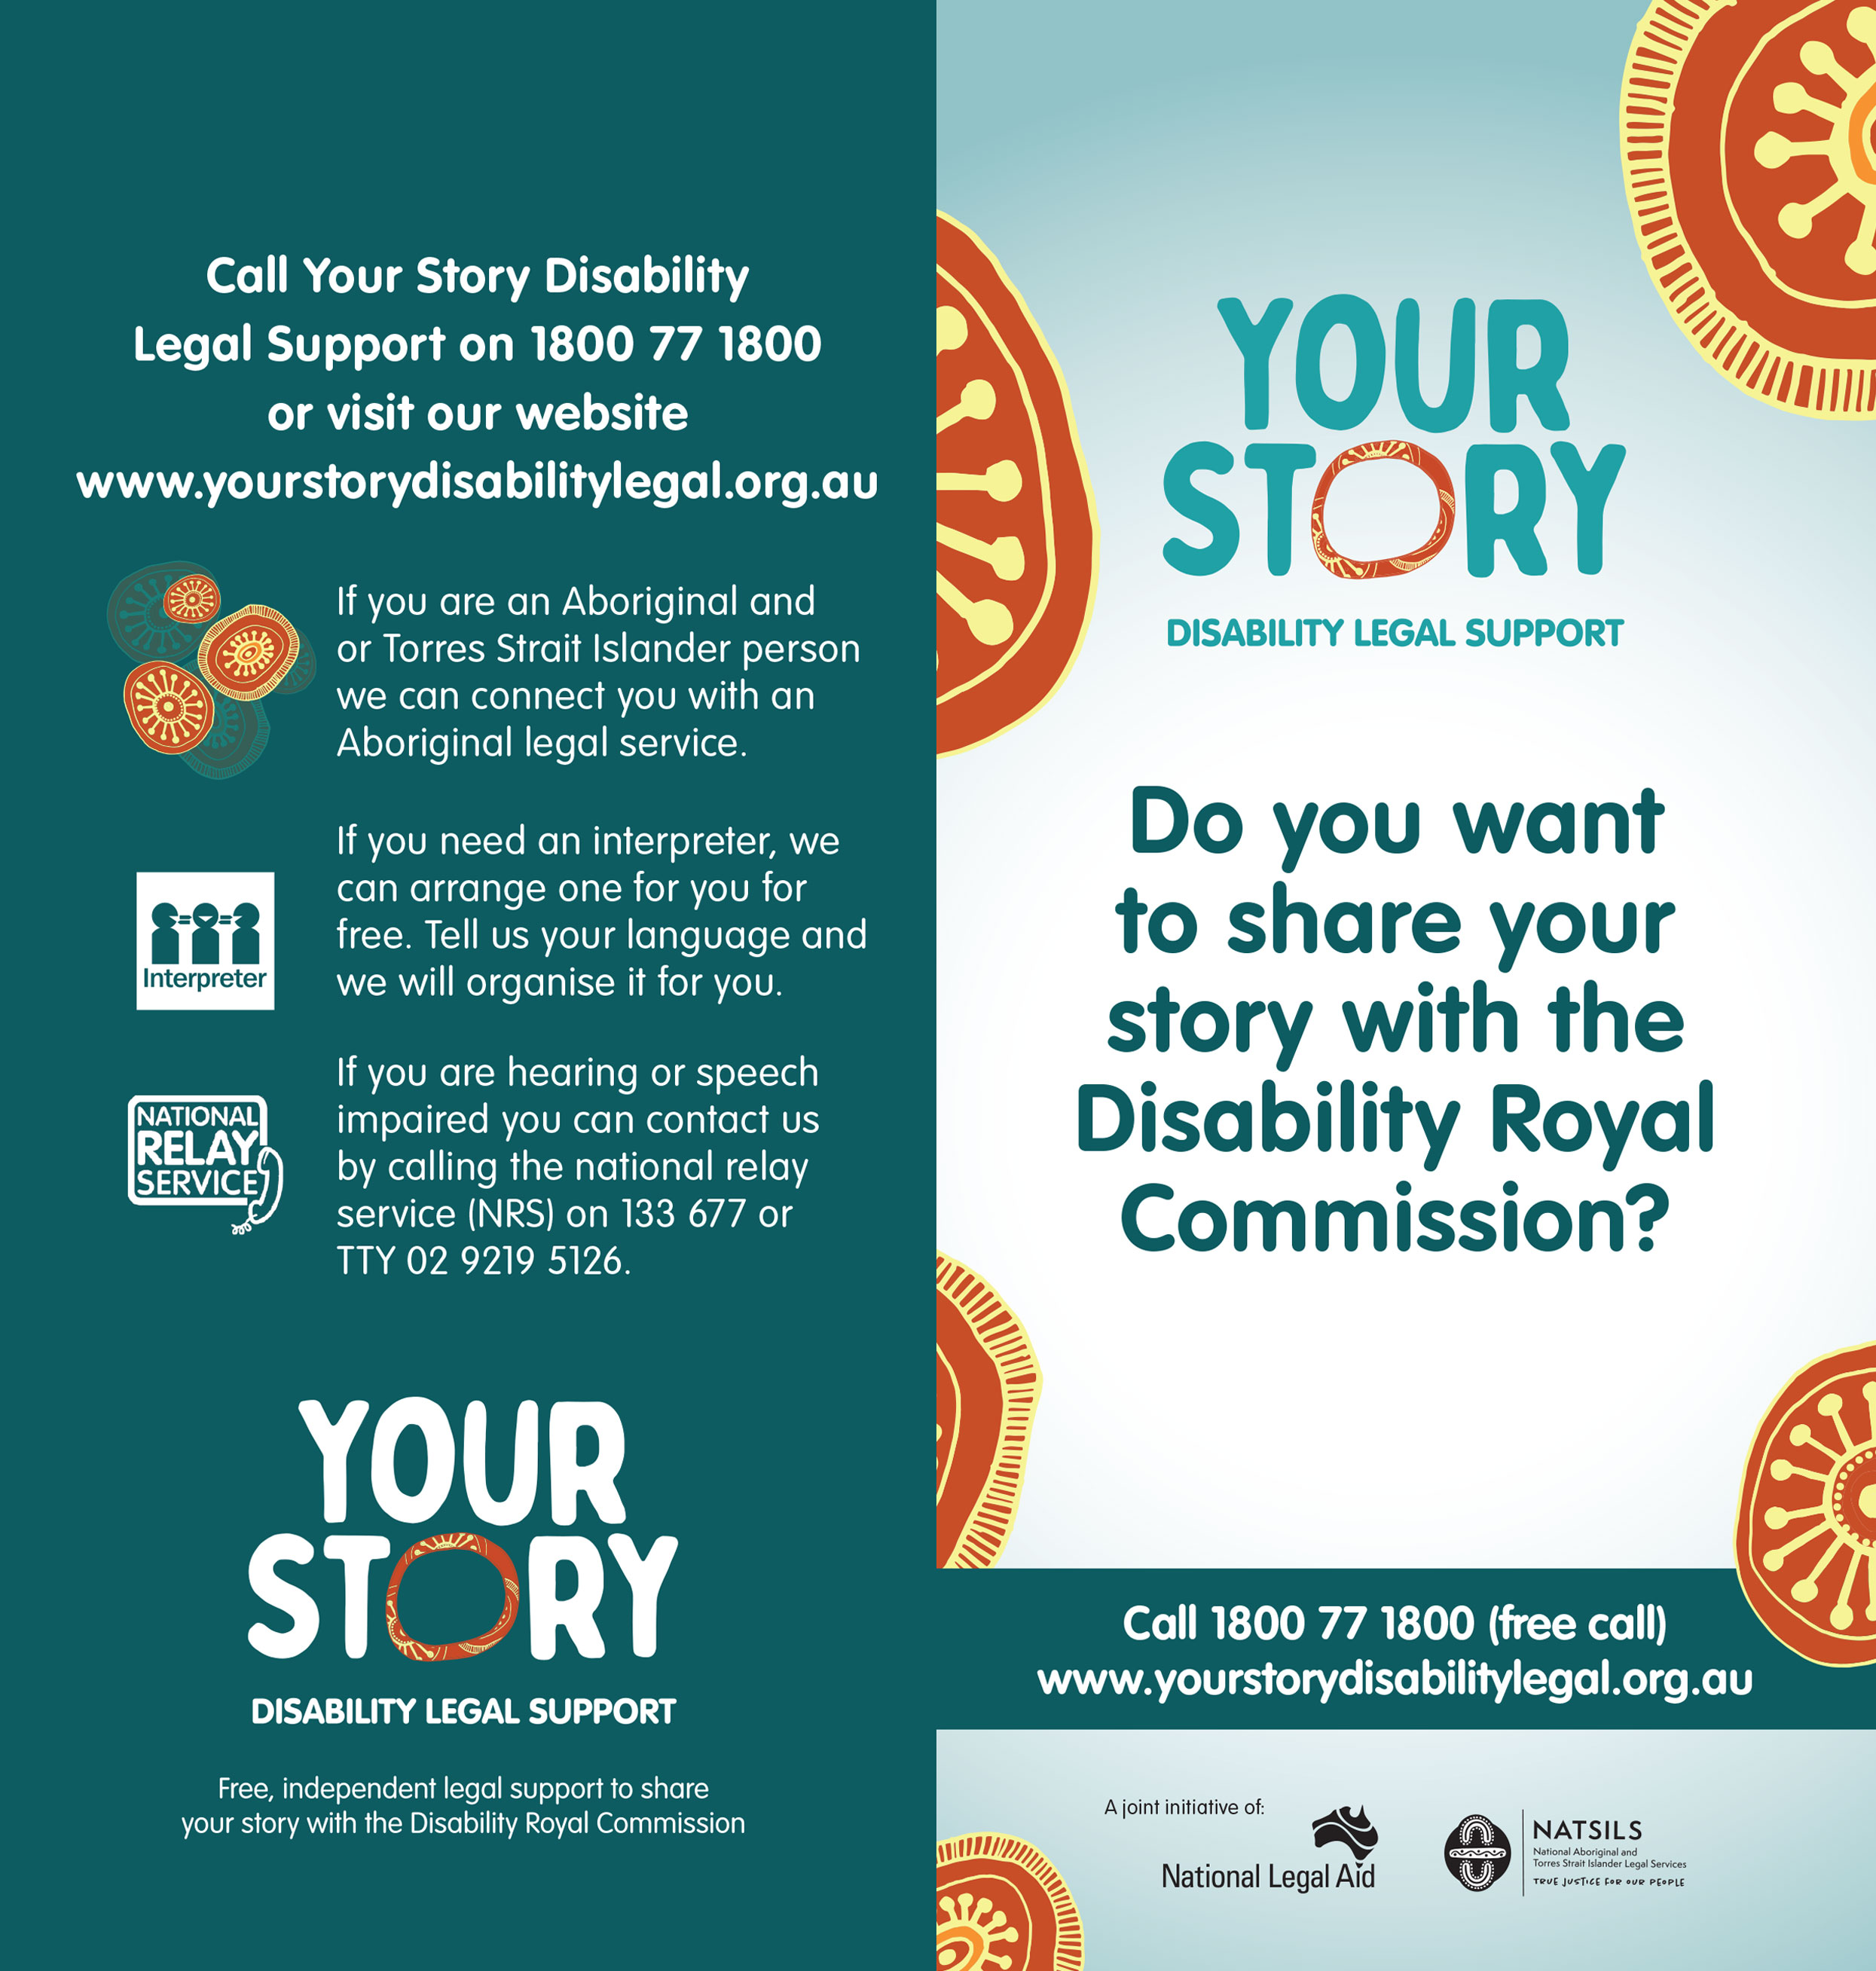 هل ترغب في مشاركة قصتك مع اللجنة الملكية المعنية بشؤون الإعاقة؟